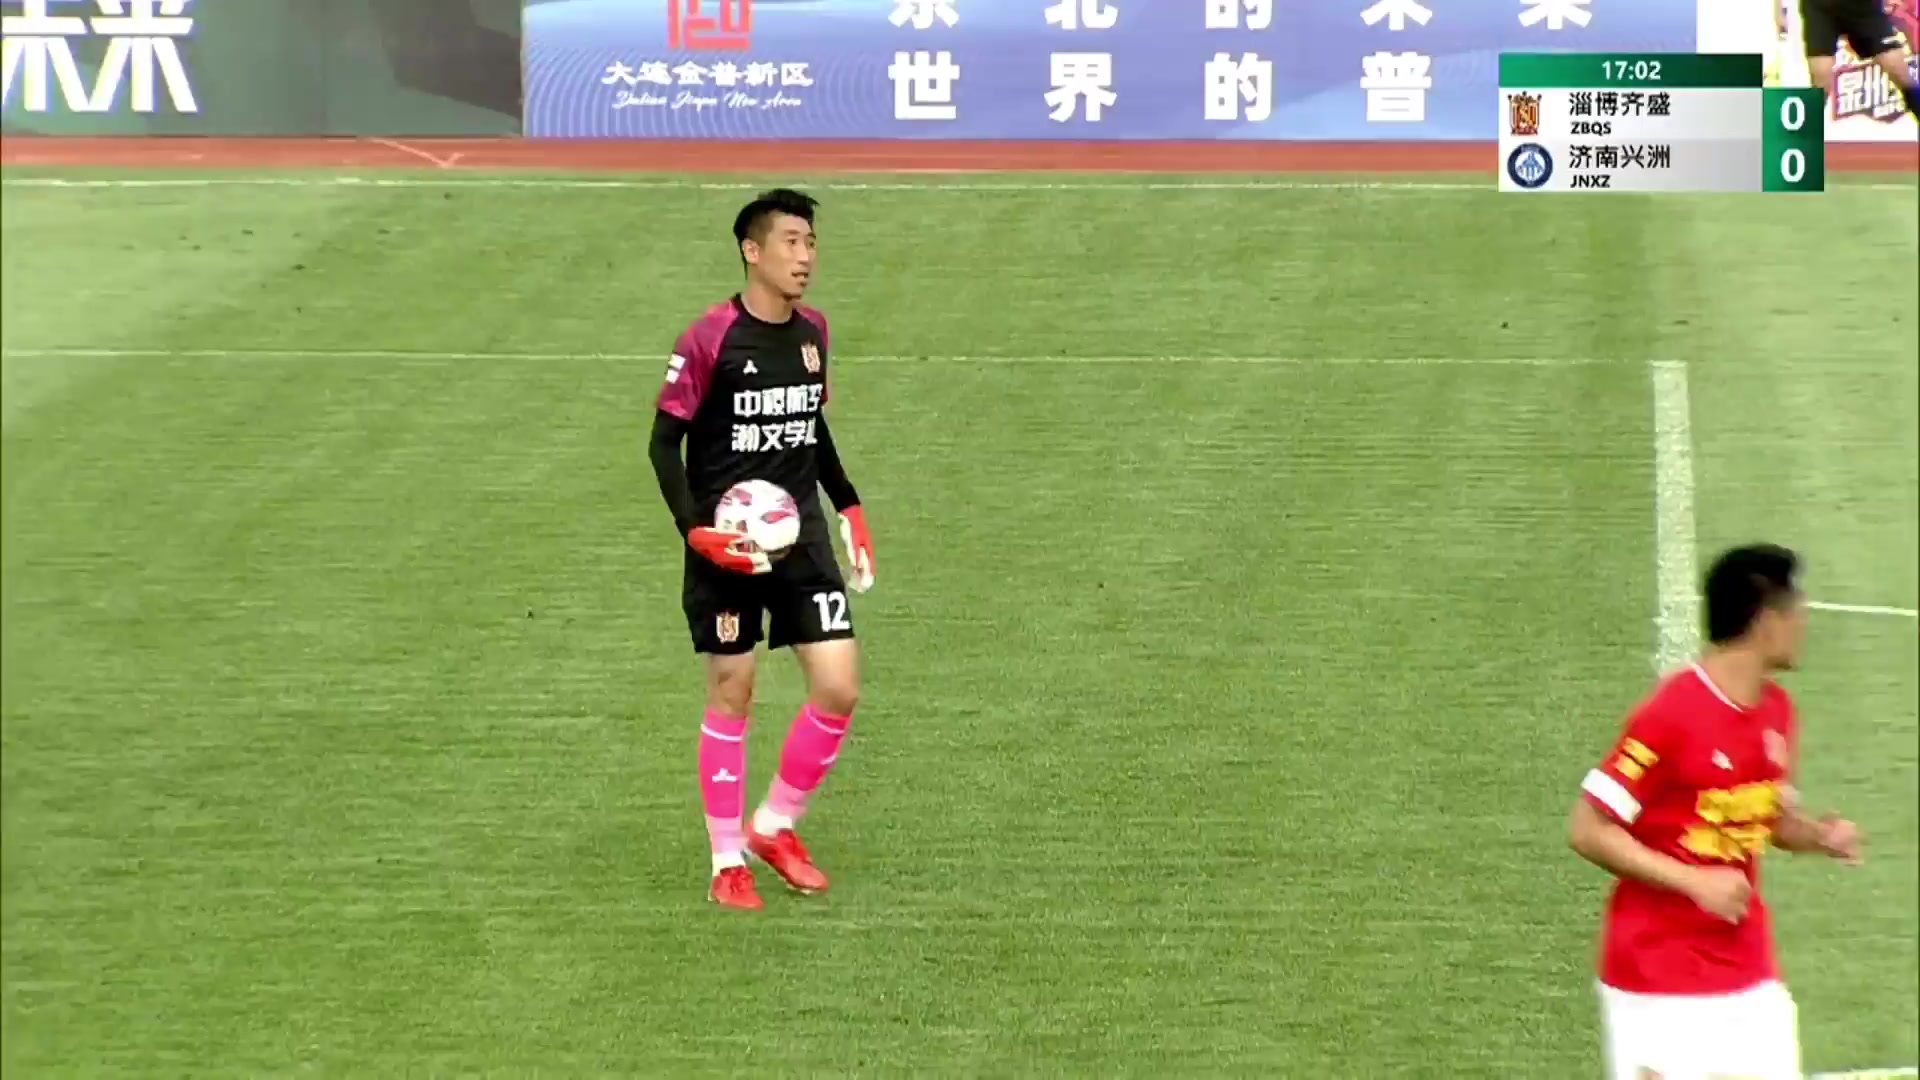 CHA D2 Zibo zi cheng Vs Jinan XingZhou Sun Xipeng Goal in 17 min, Score 1:0